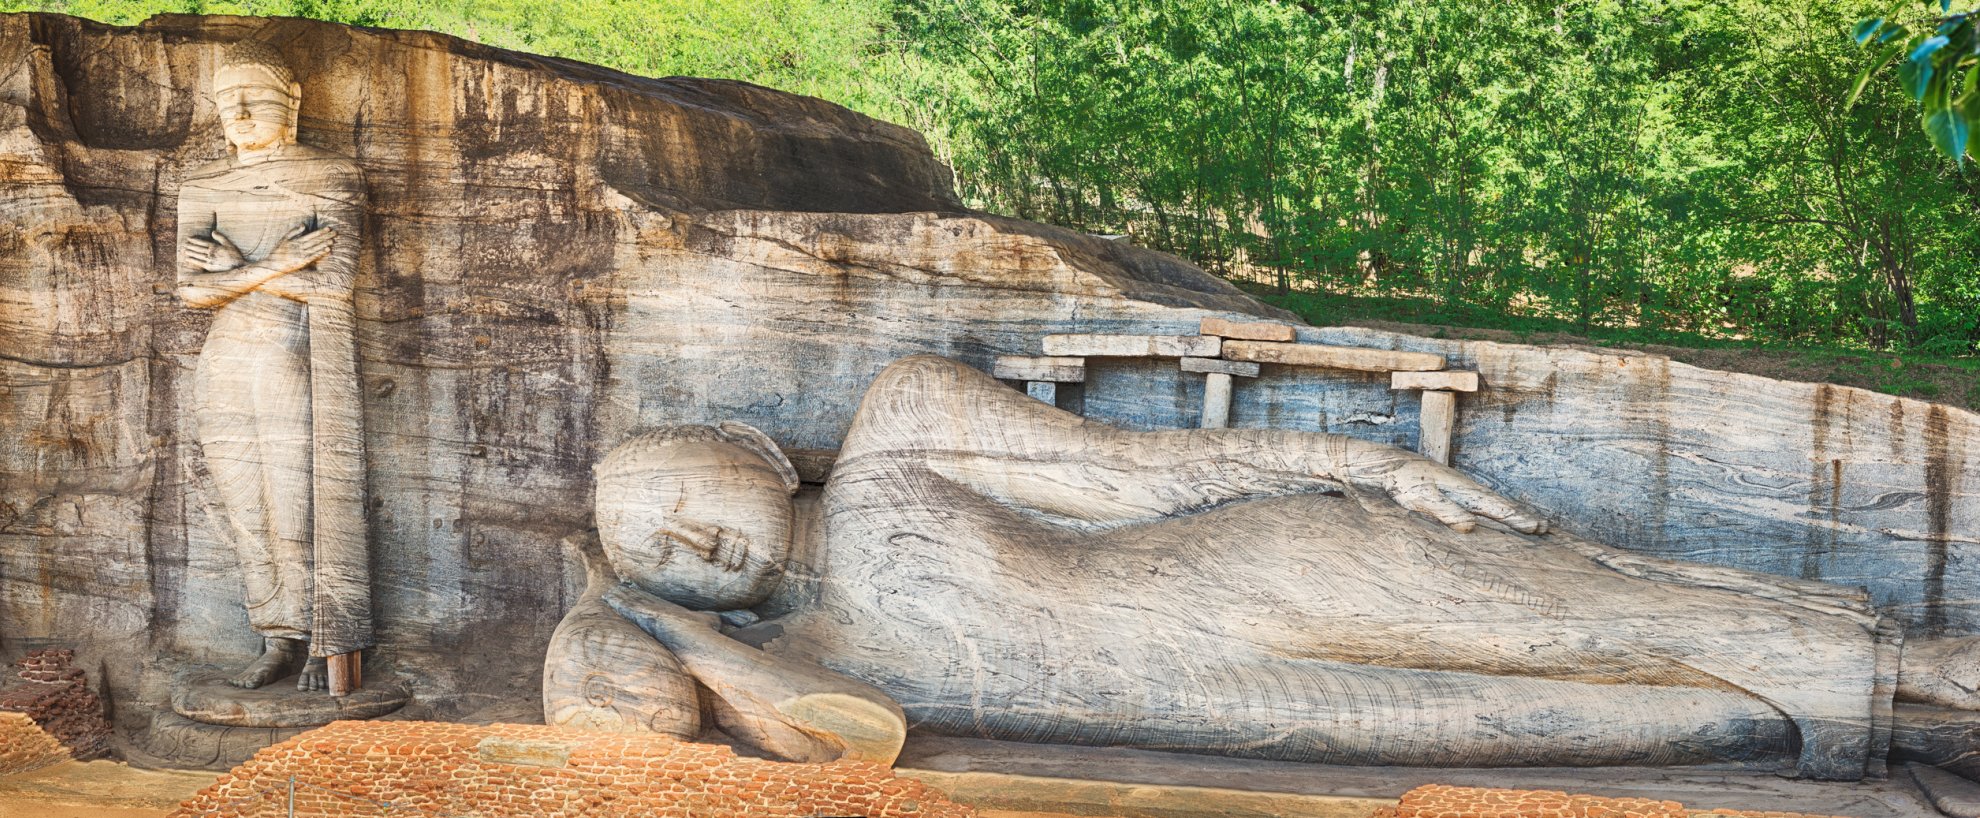 Sri Lanka Polonnaruwa Gal Vihara Buddha Statue